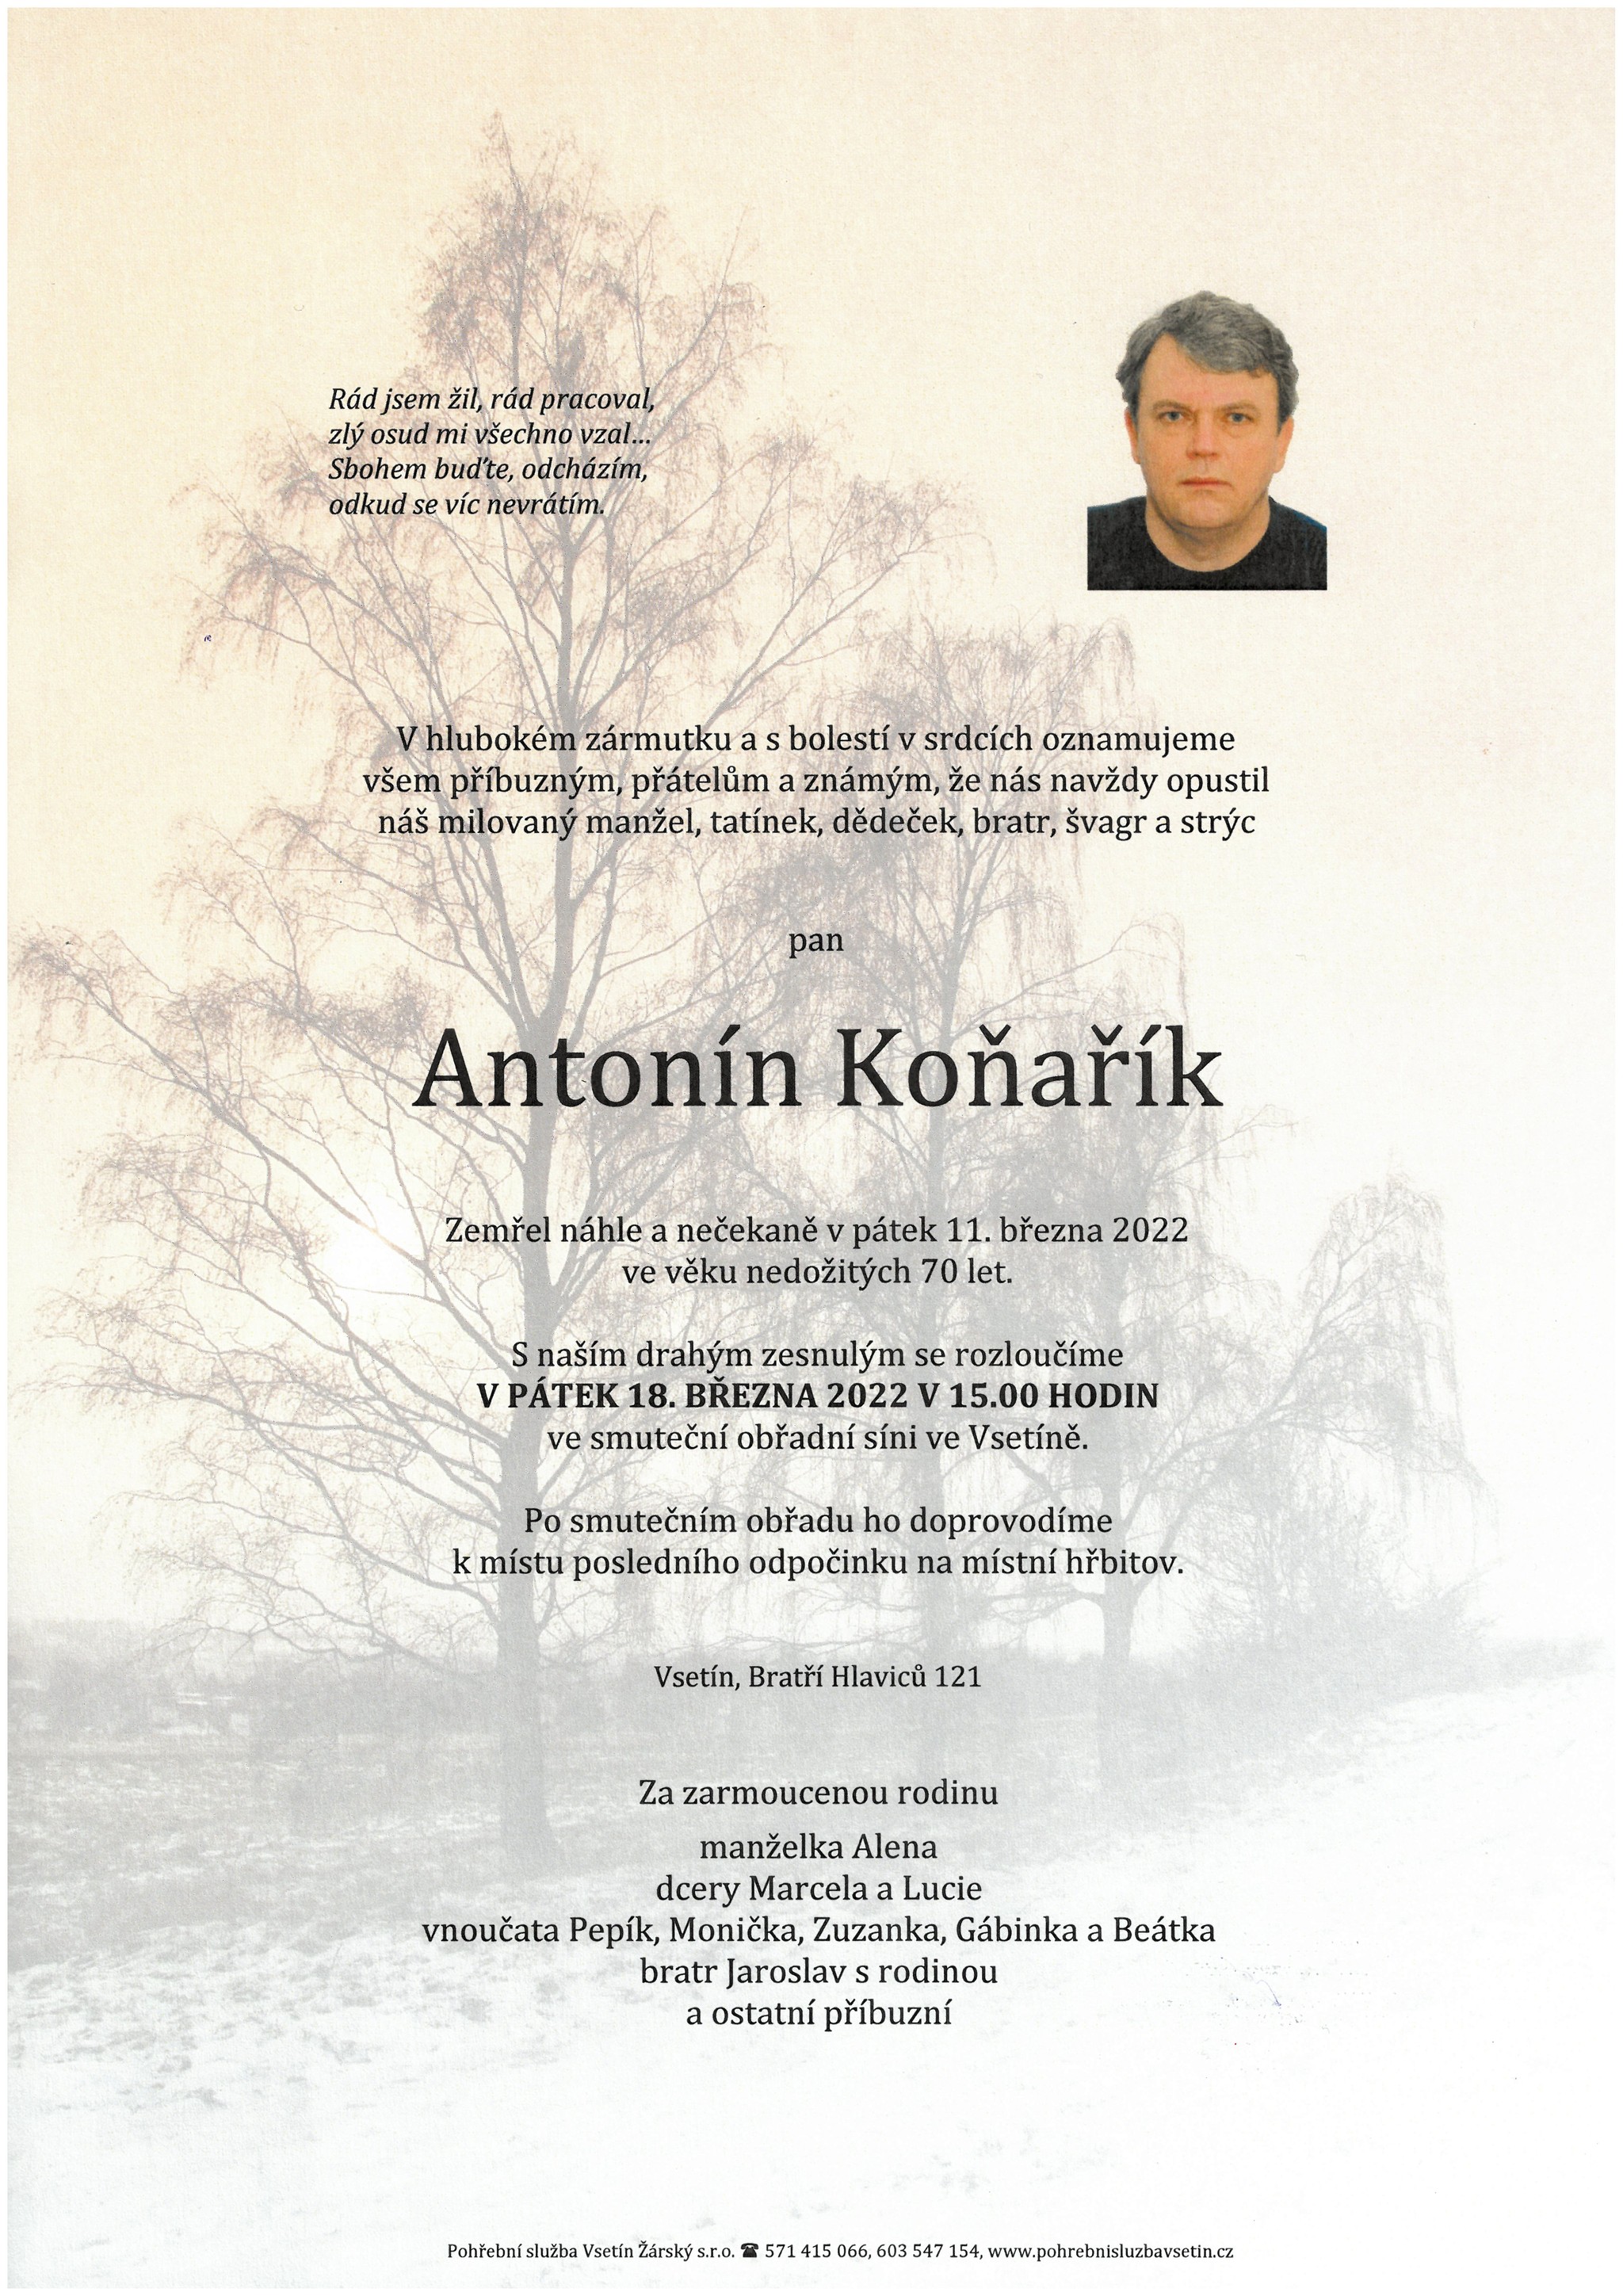 Antonín Koňařík